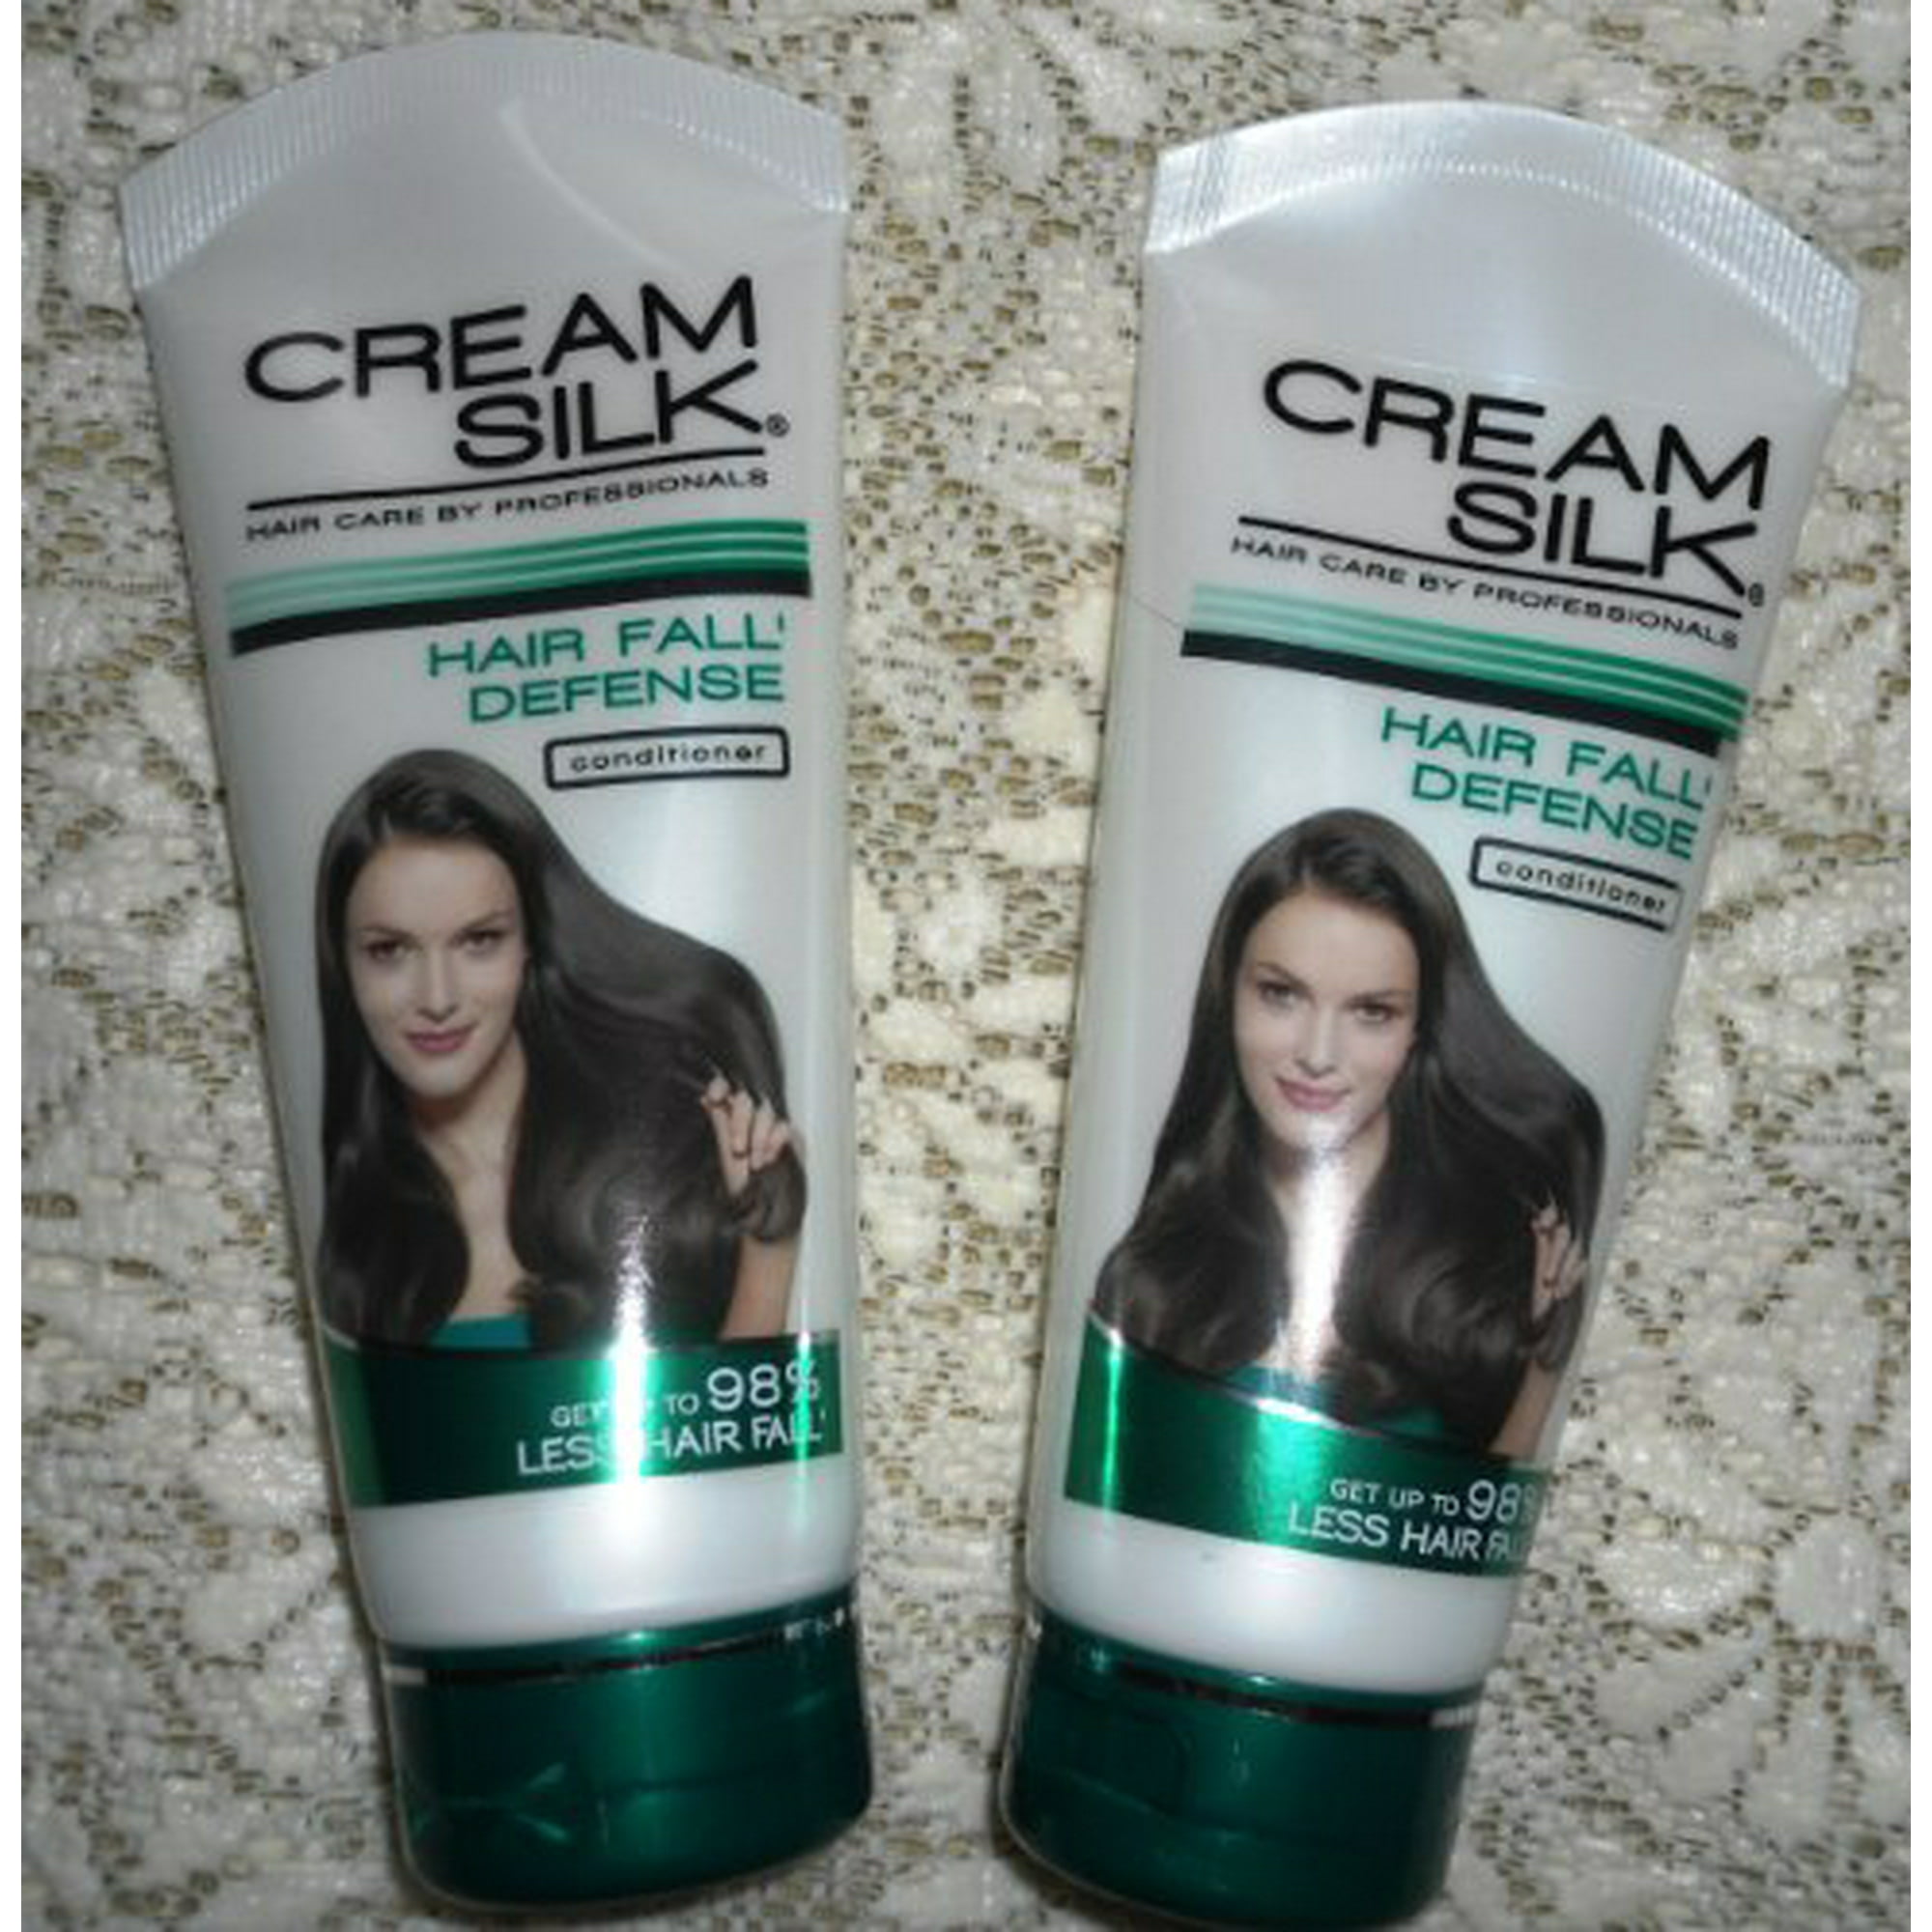 Lot of 2 Cream Silk Conditioner Hair Fall Defense for Less Hair Fall  Creamsilk 180ml | Walmart Canada